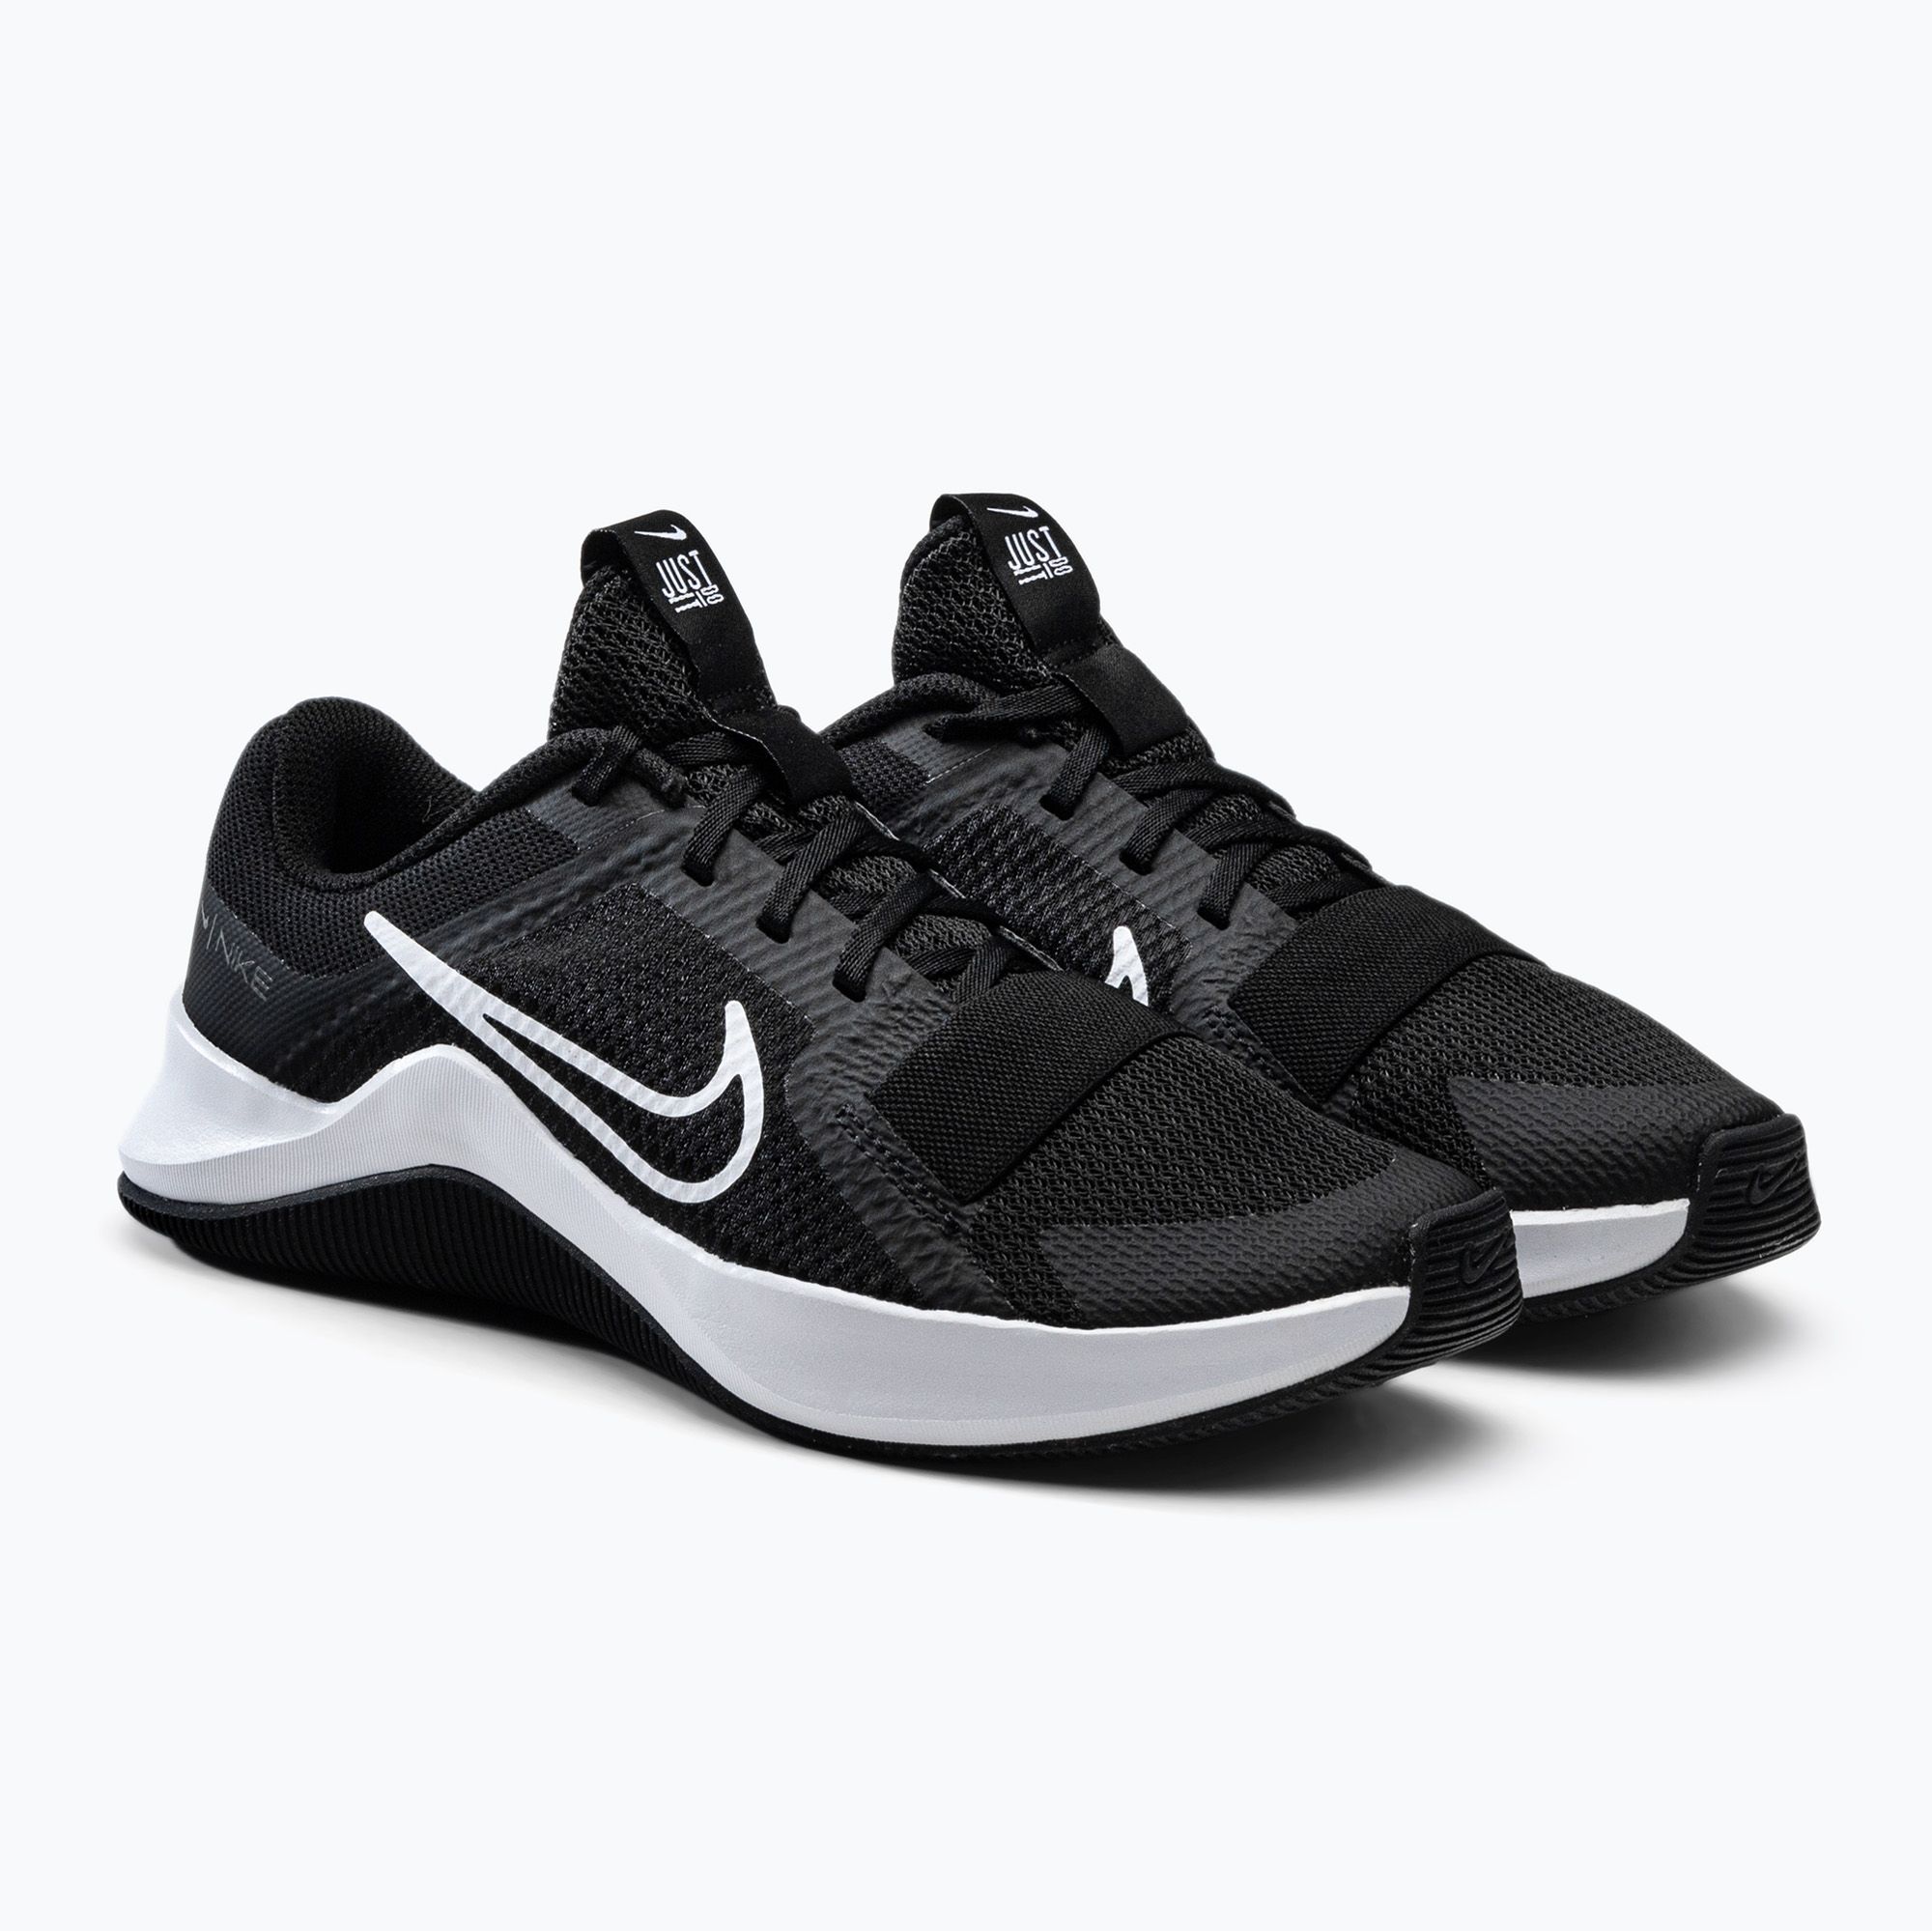 Buty treningowe damskie Nike Mc Trainer 2 black/white/iron grey zdjęcie nr 5